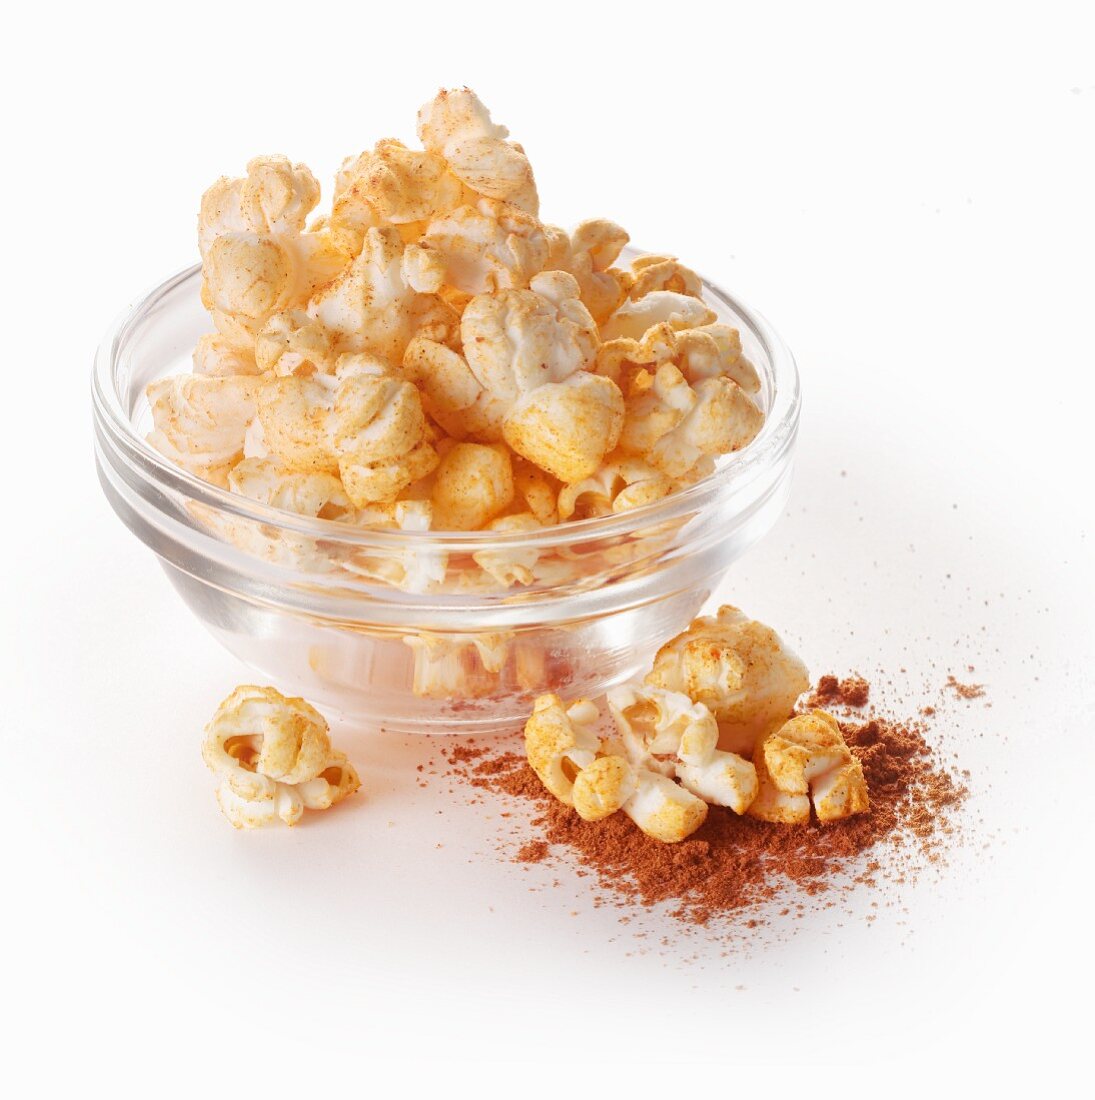 Popcorn with paprika powder